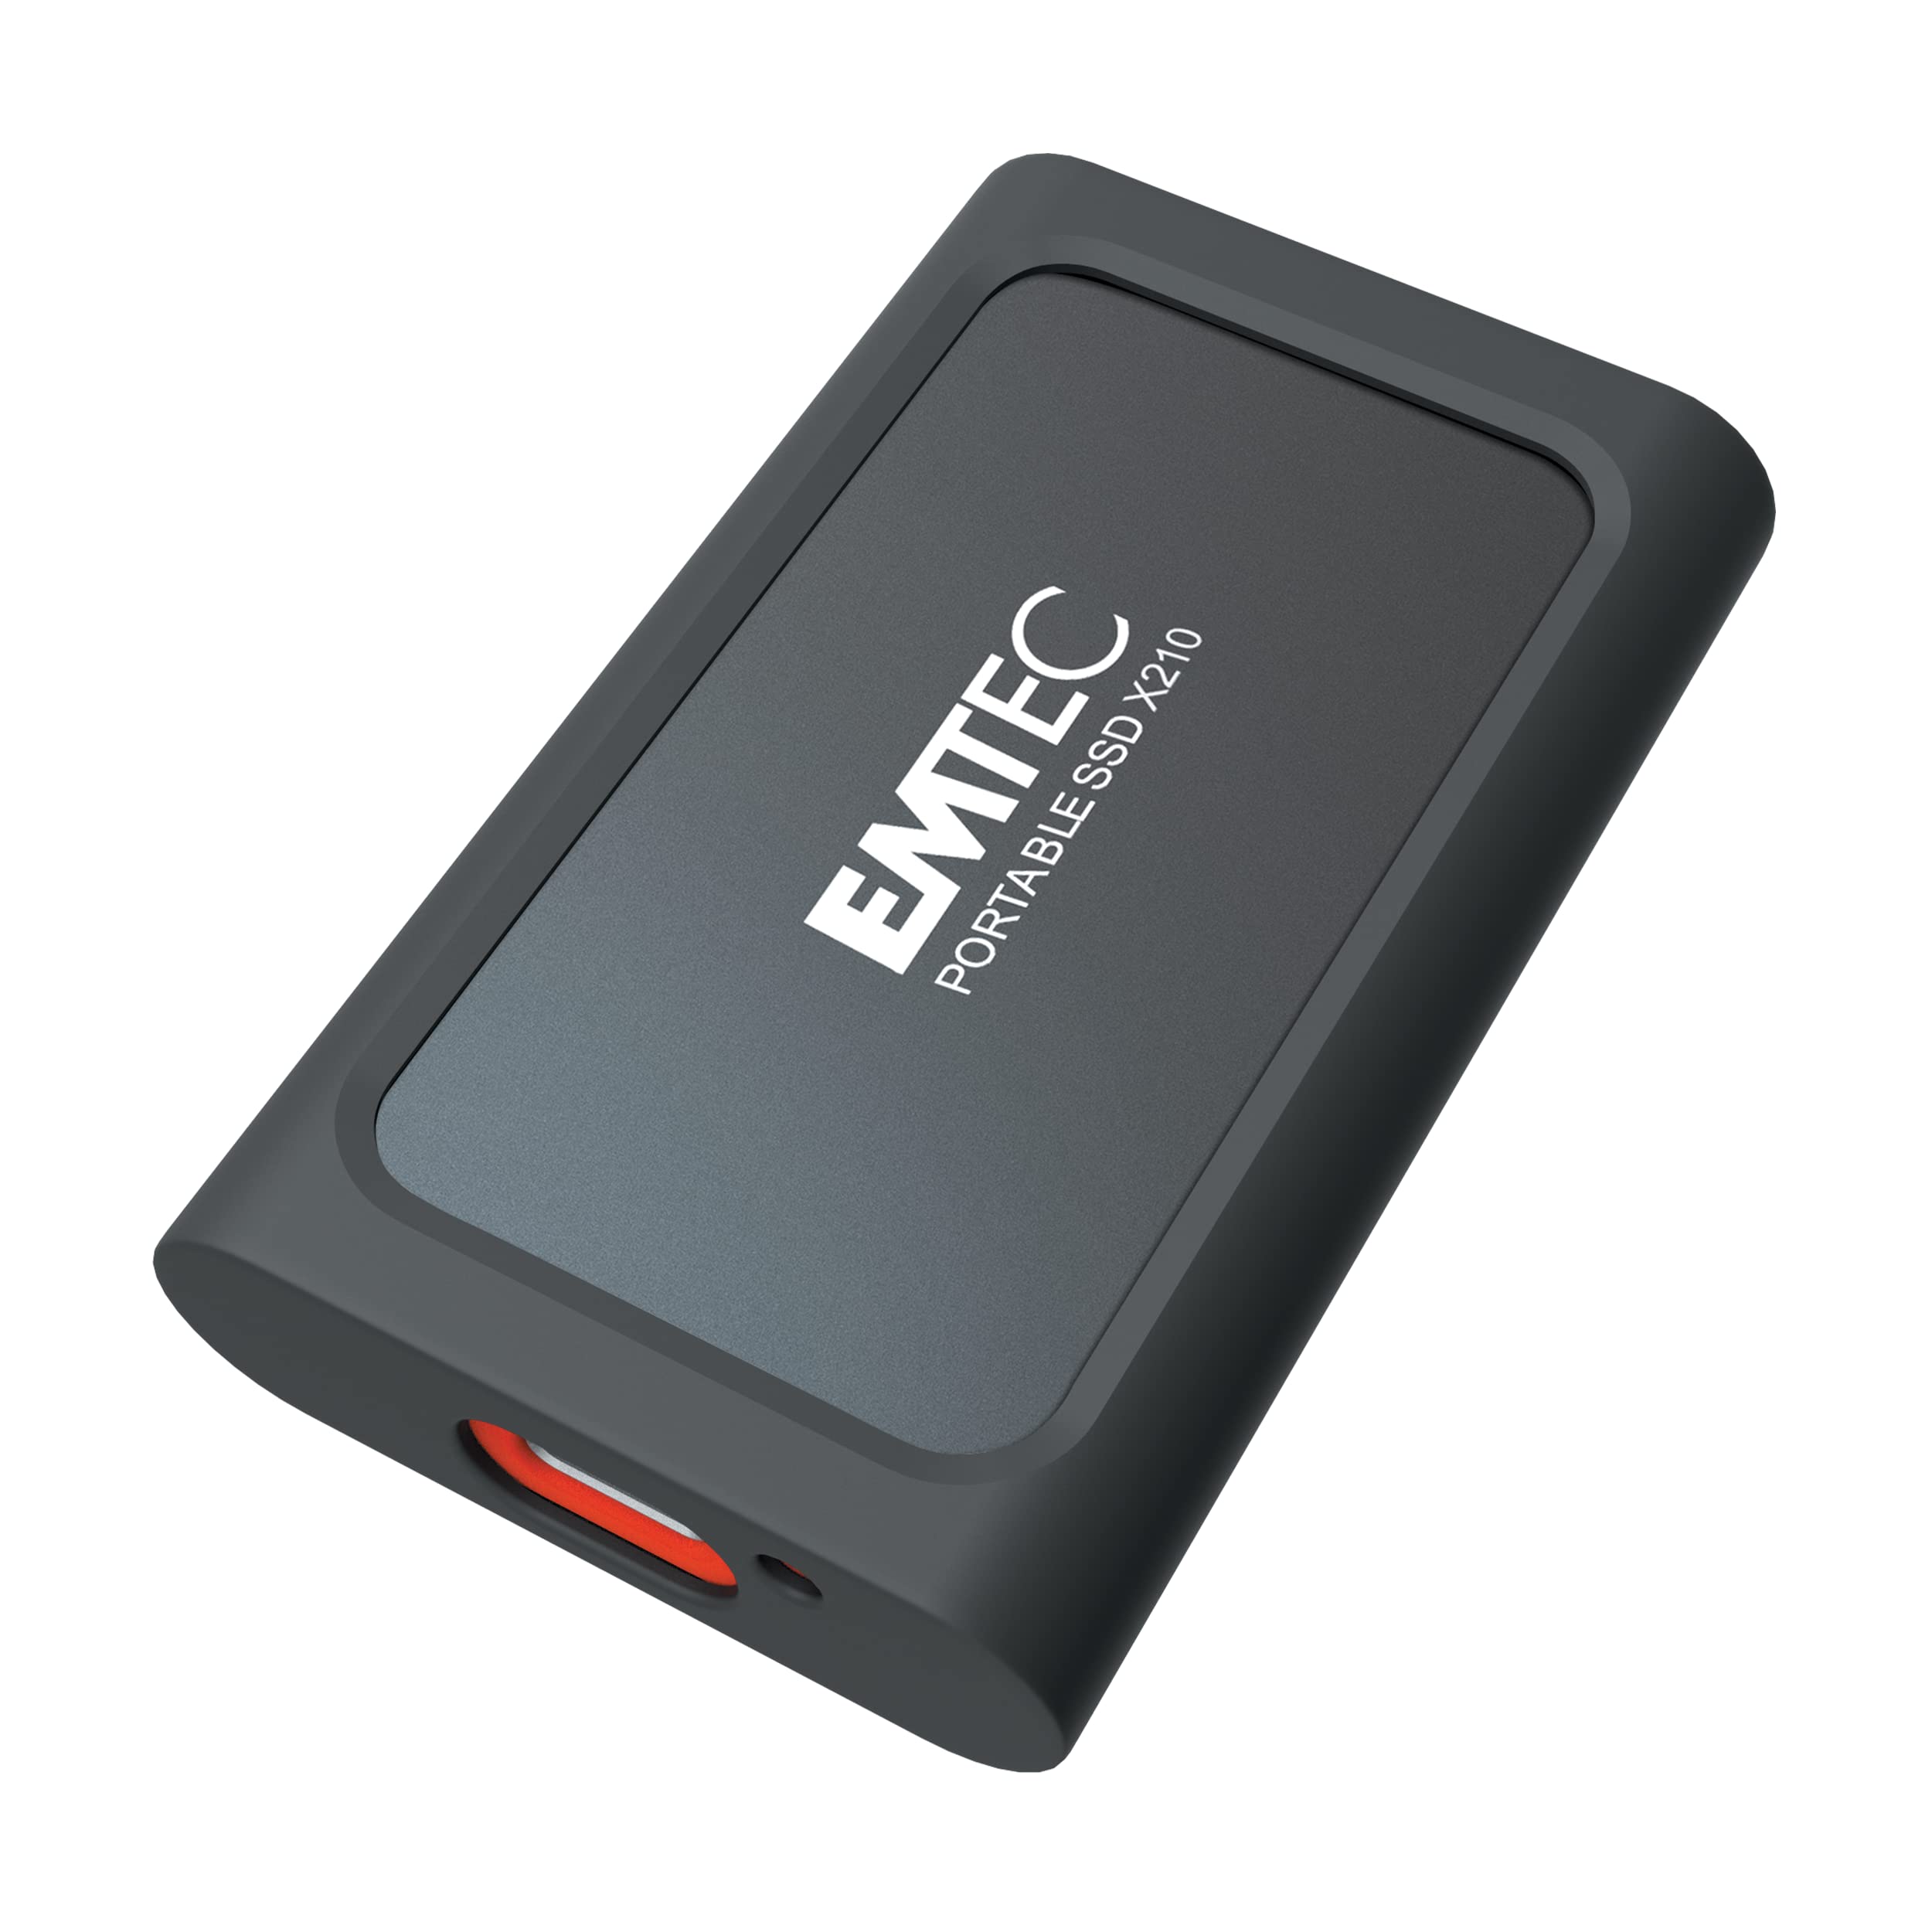 Emtec - X210 External - 1024G - con cover protettiva - ECSSD1TX210